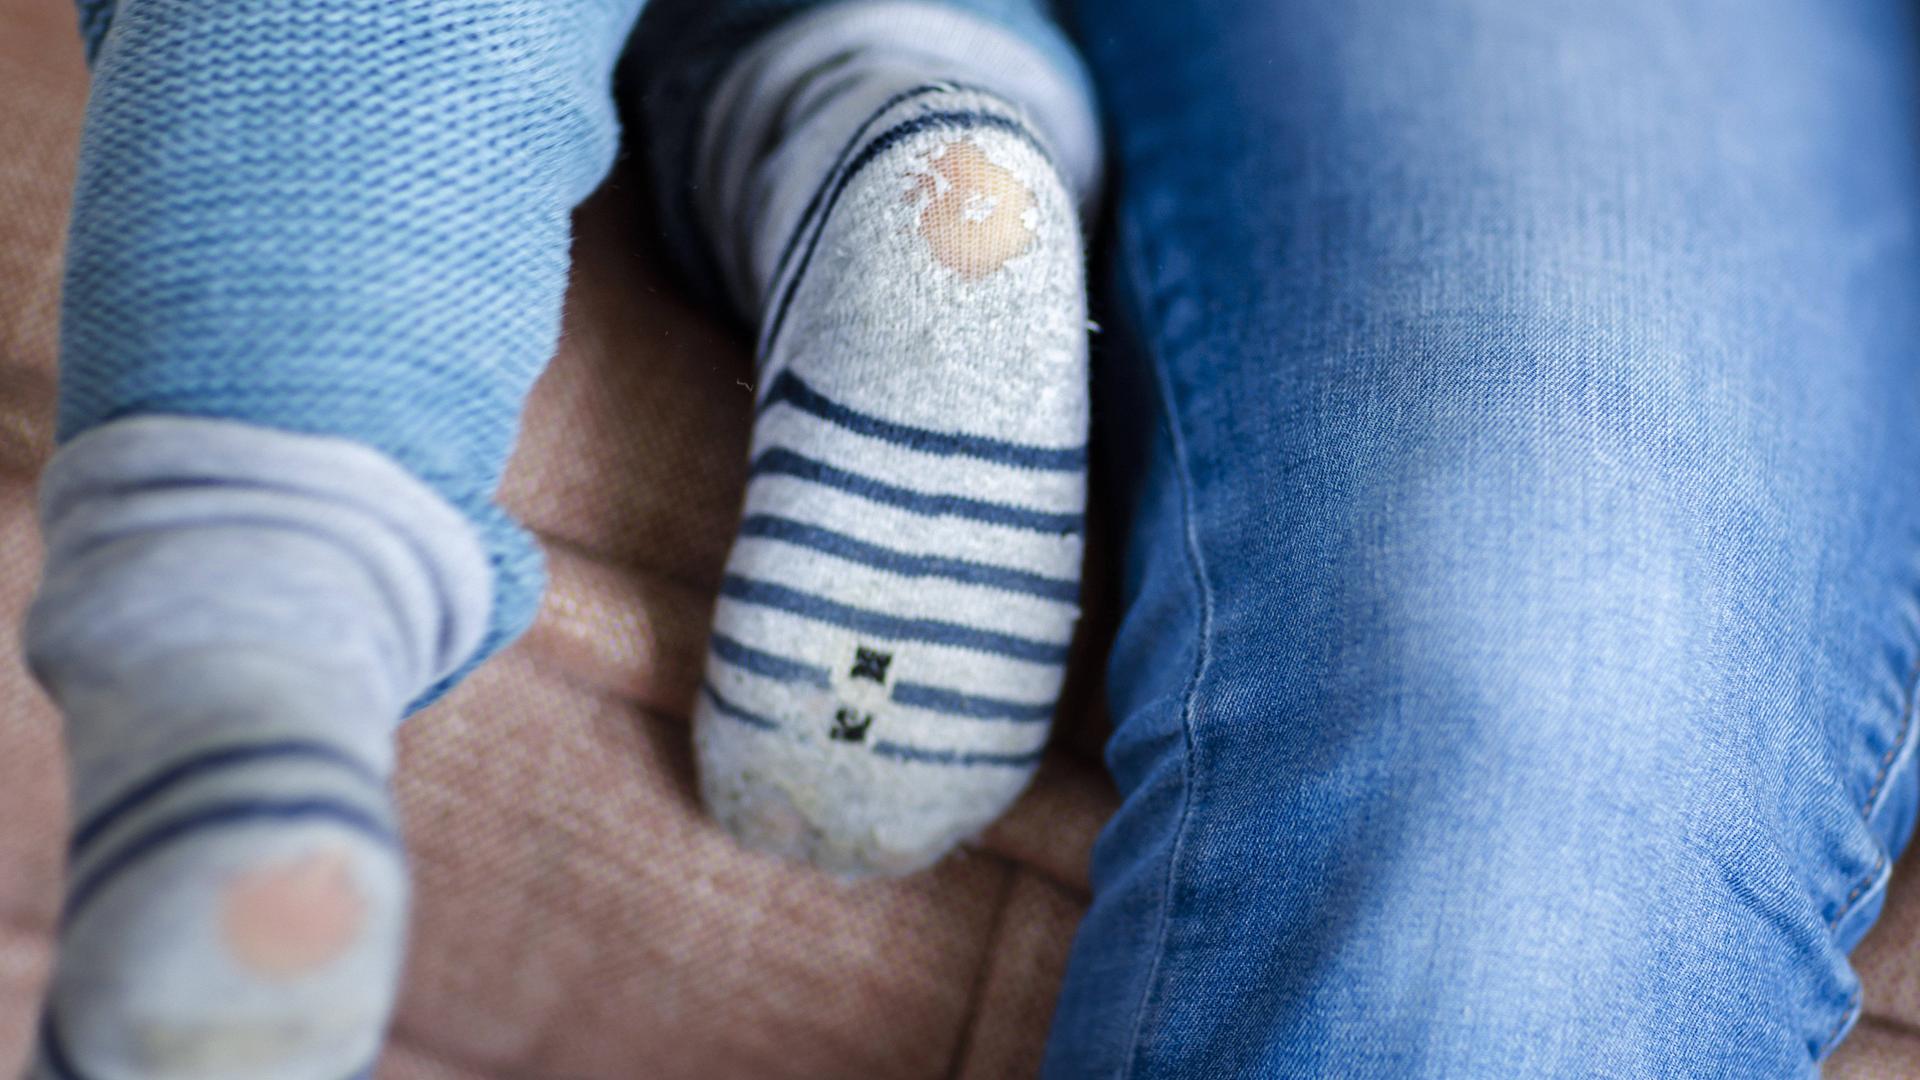 Symbolbild zum Thema Kinderarmut: Ein Baby mit kaputten Socken